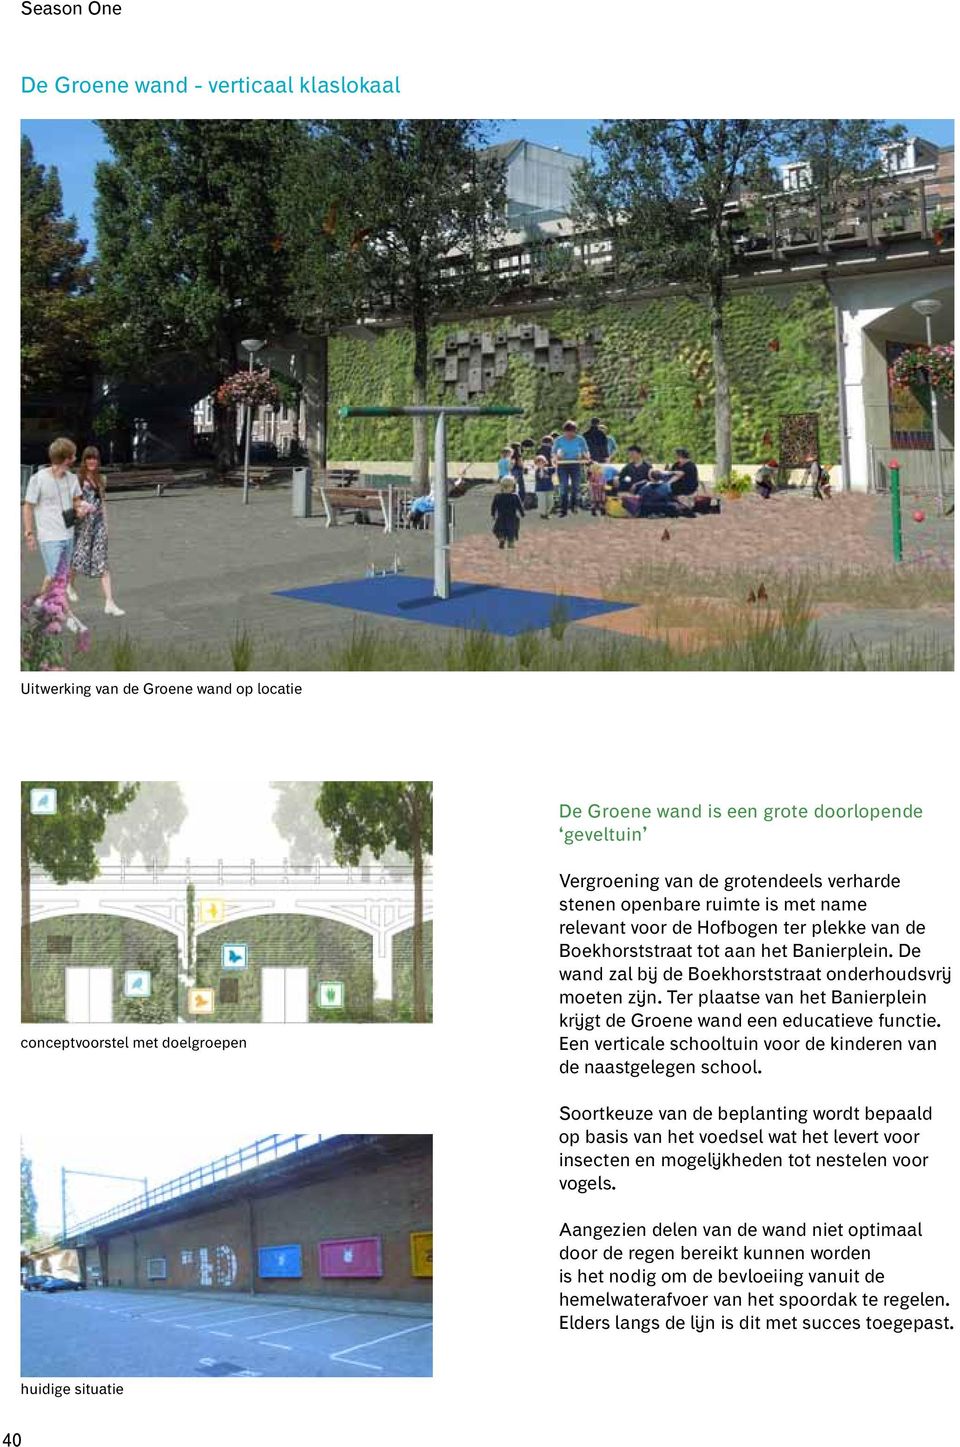 Ter plaatse van het Banierplein krijgt de Groene wand een educatieve functie. Een verticale schooltuin voor de kinderen van de naastgelegen school.